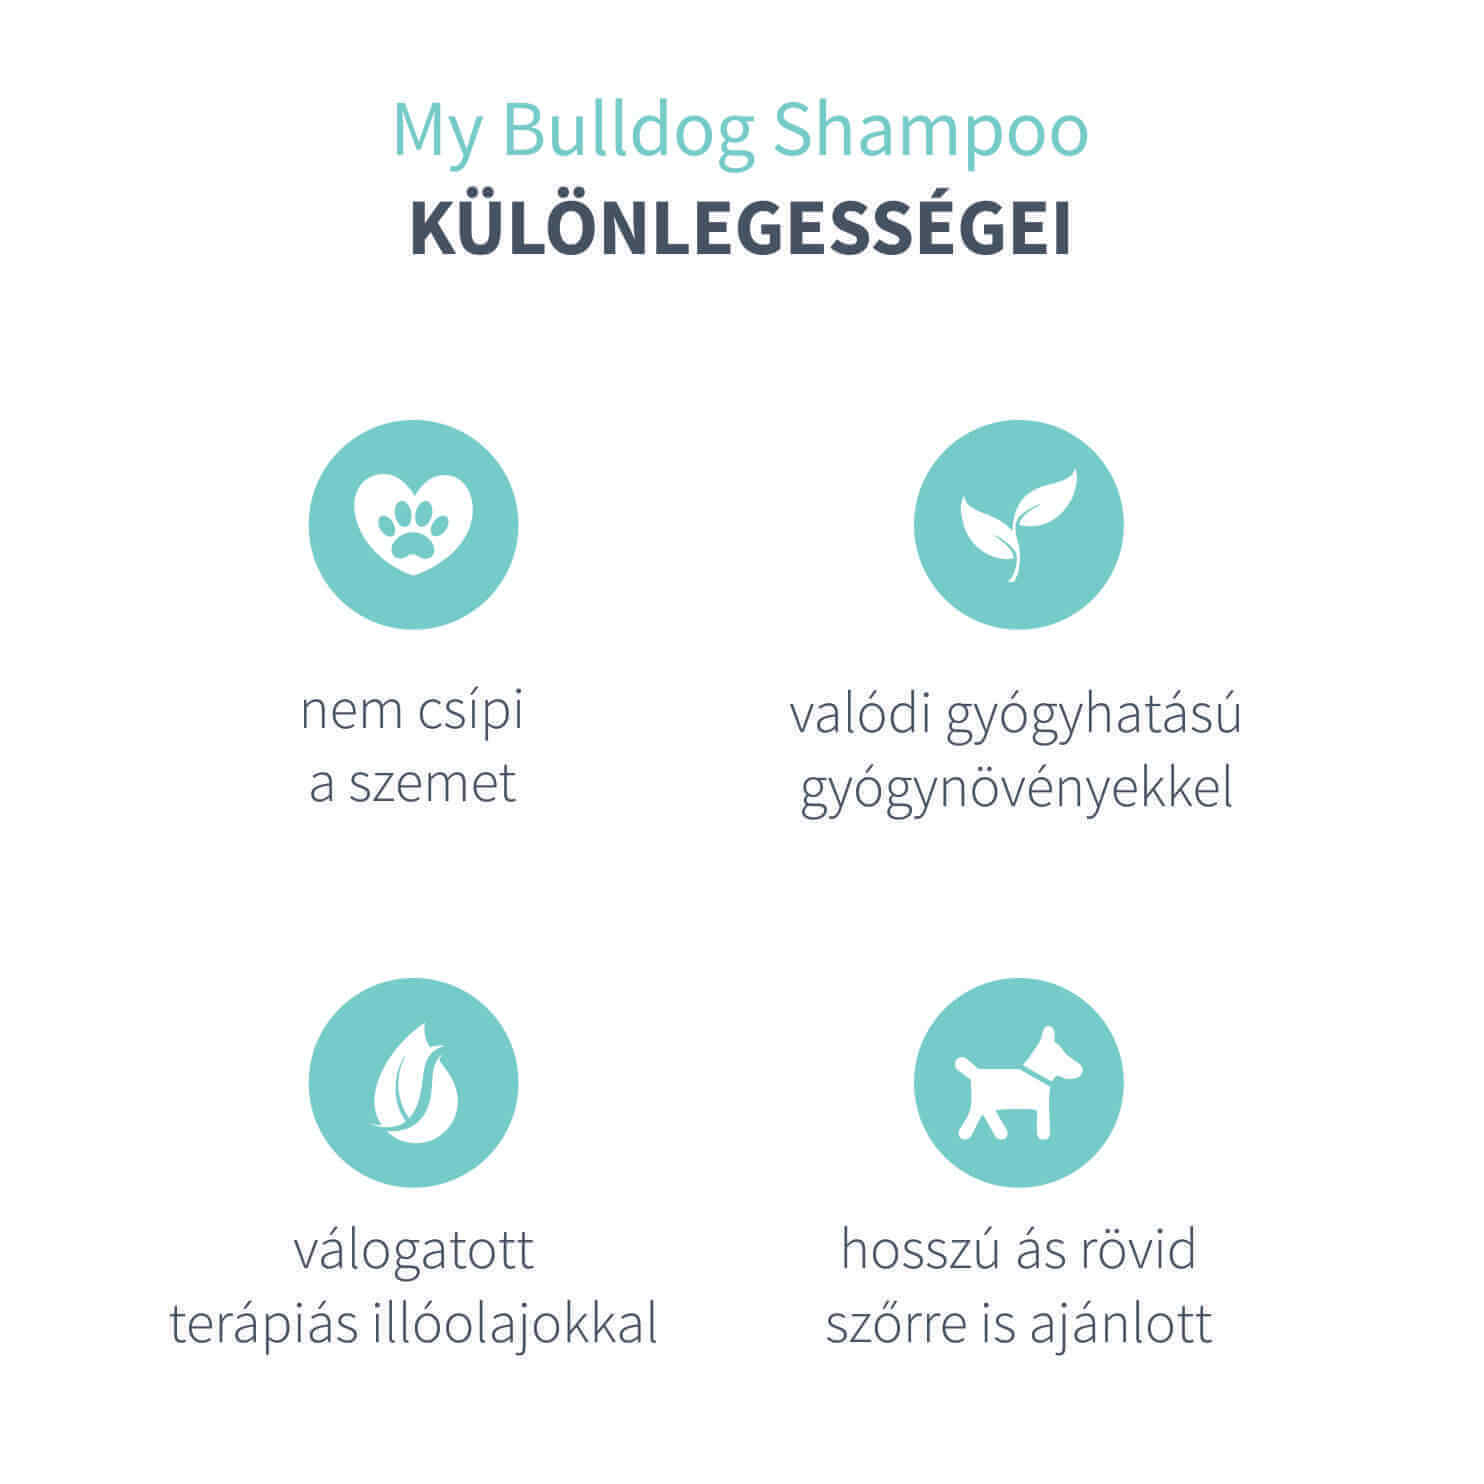 My Bulldog Shampoo - Sampon pe bază de plante cu lemongrass ecologic - zoom